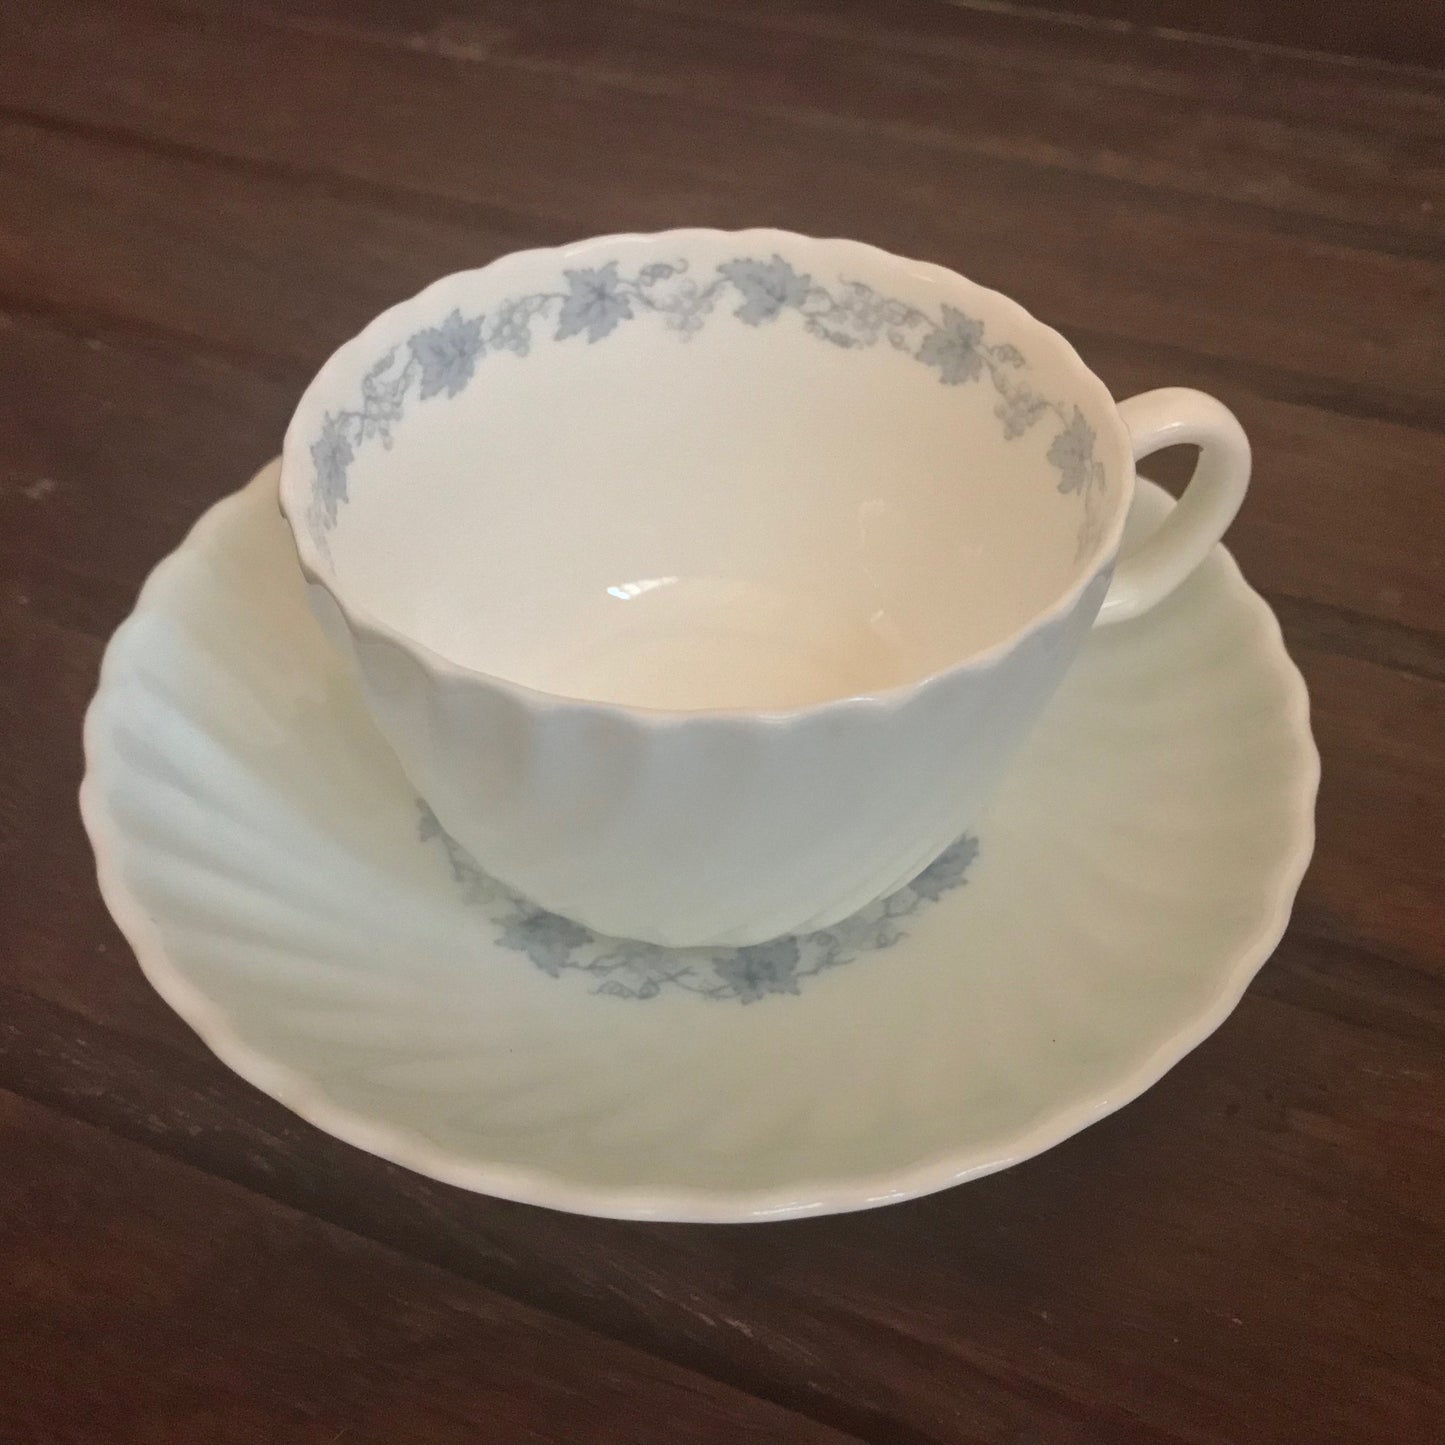 Minton teacup in Vineyard blue S574 pattern